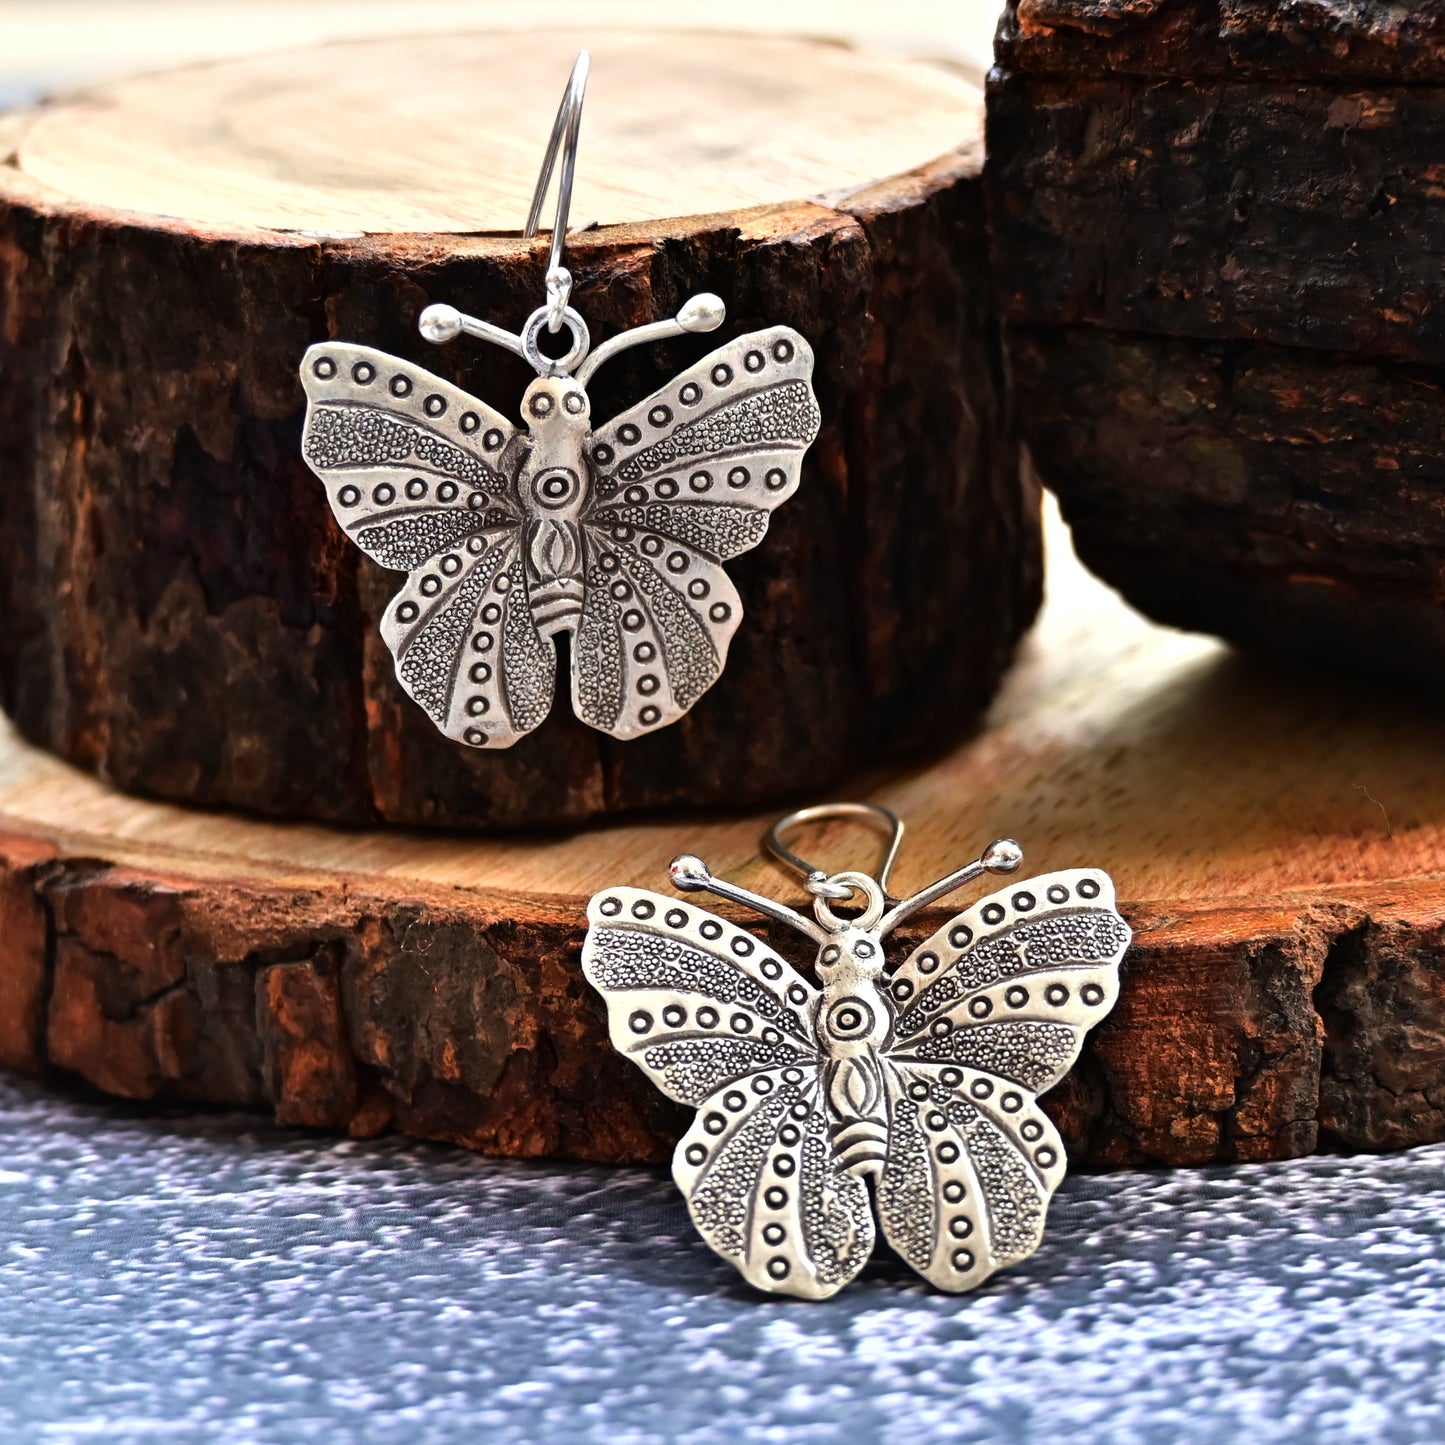 1.	Butterfly earrings